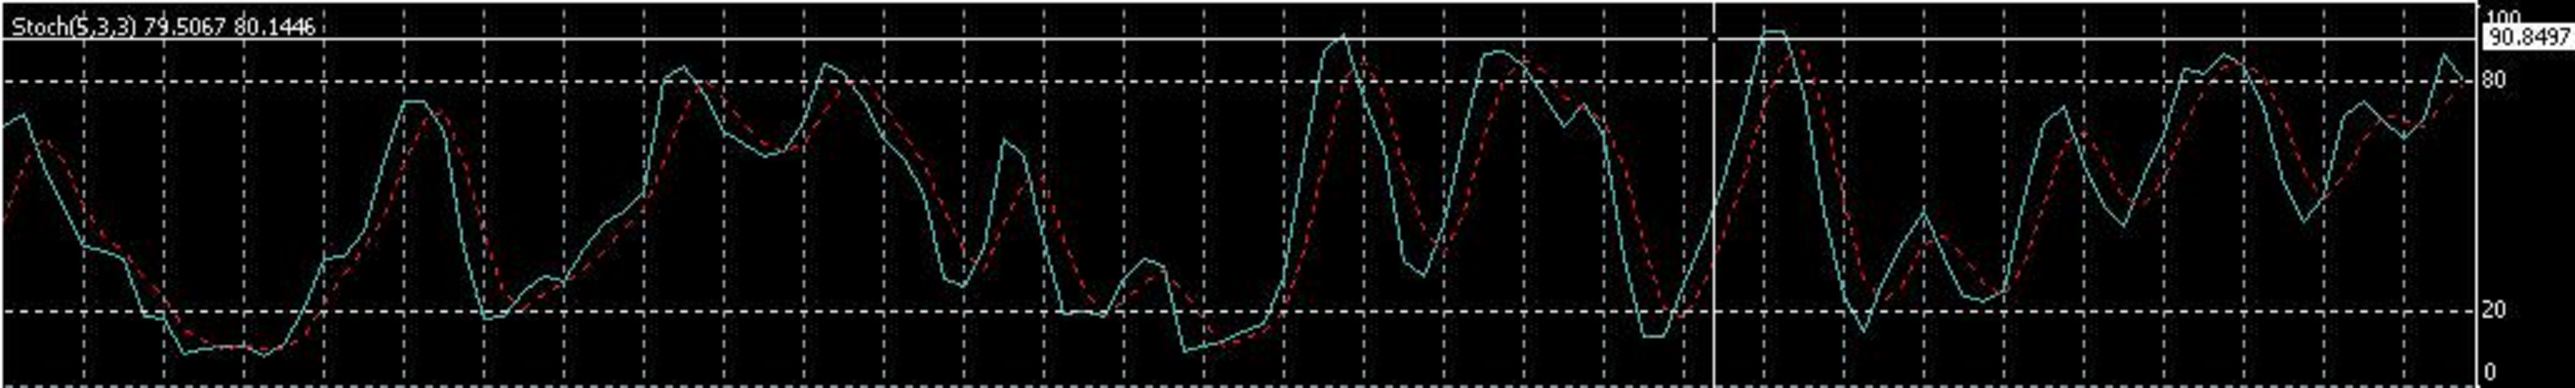 Oscylator stochastyczny Sygnał kupna przecięcie dwóch linii oscylatora poniżej poziomu 20